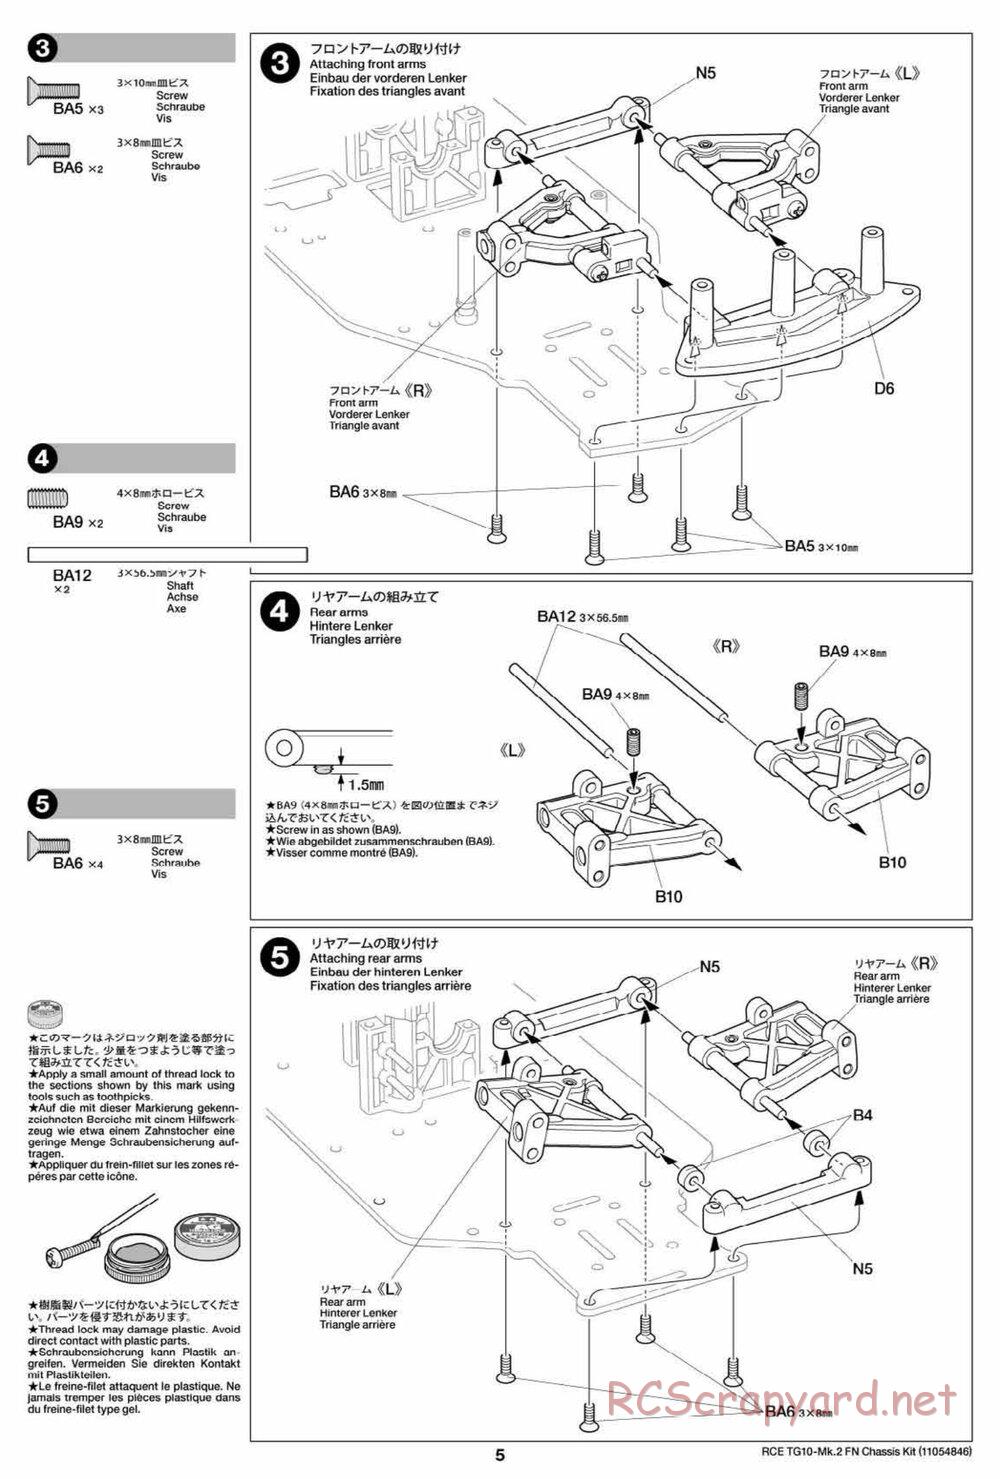 Tamiya - TG10 Mk.2 FN Chassis - Manual - Page 5